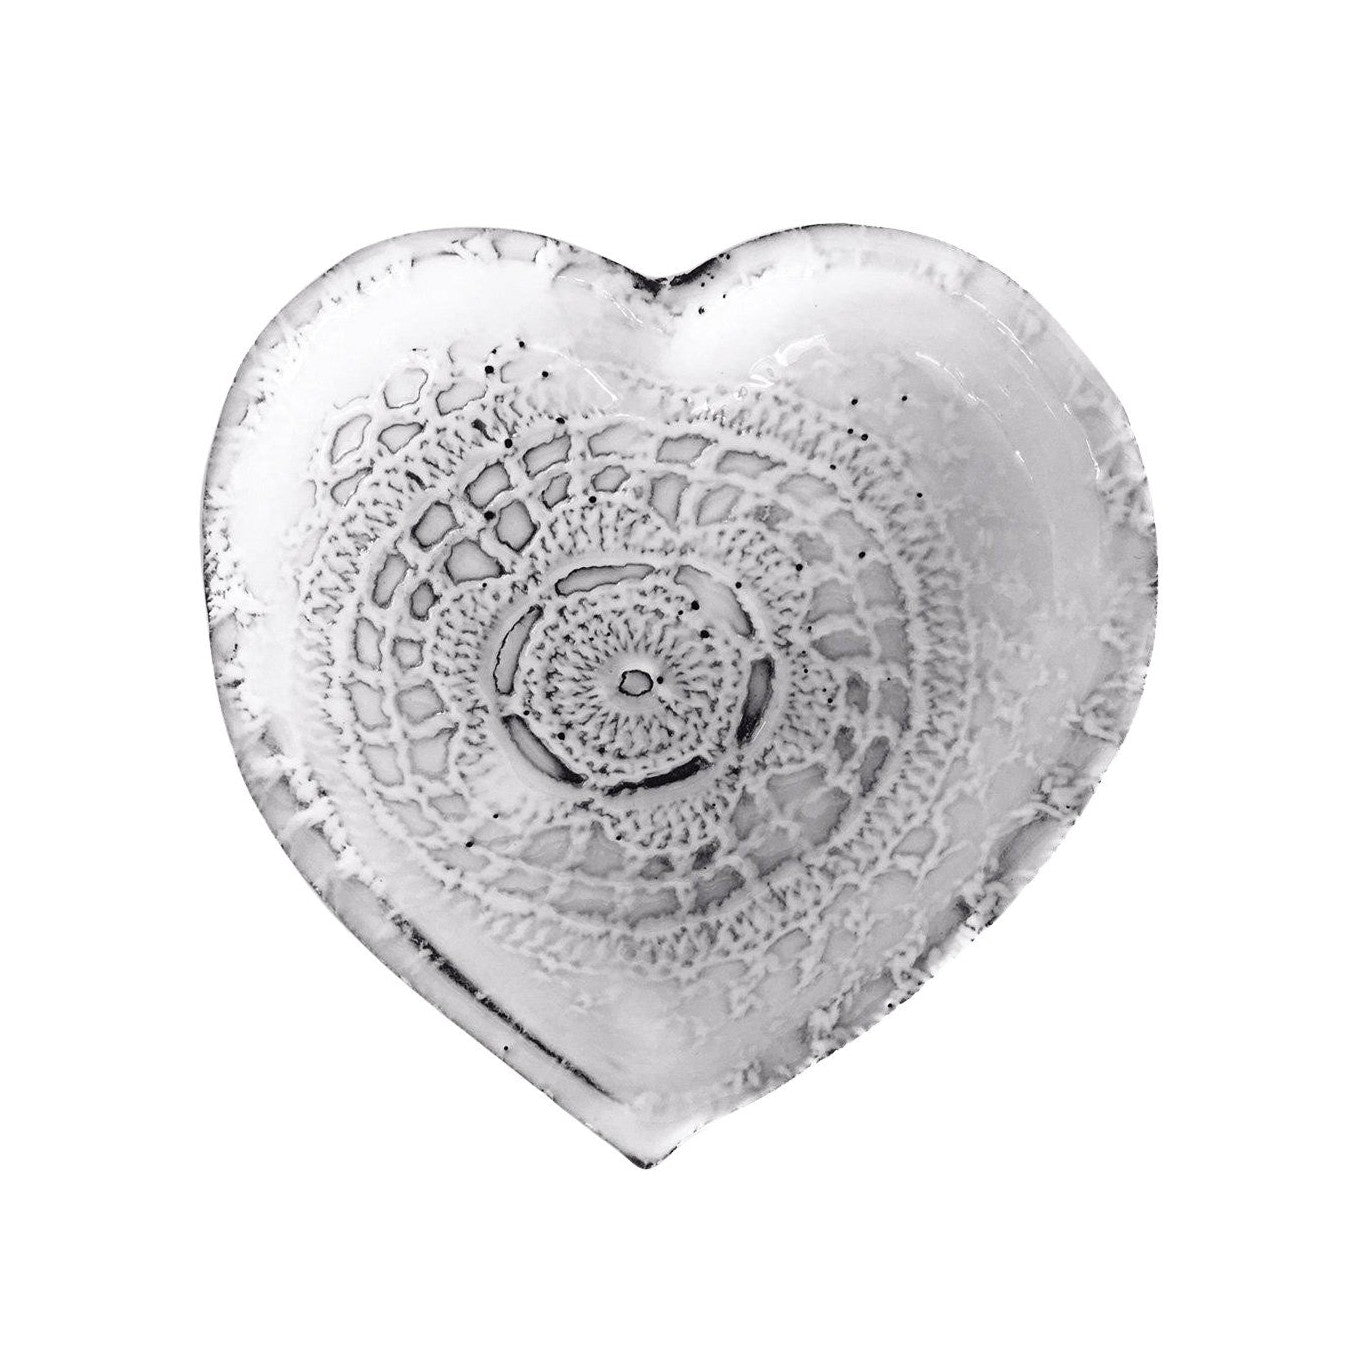 Ceramic heart-Dentelle-10,5x10,5x1,7cm-Handmade in France by CARRON